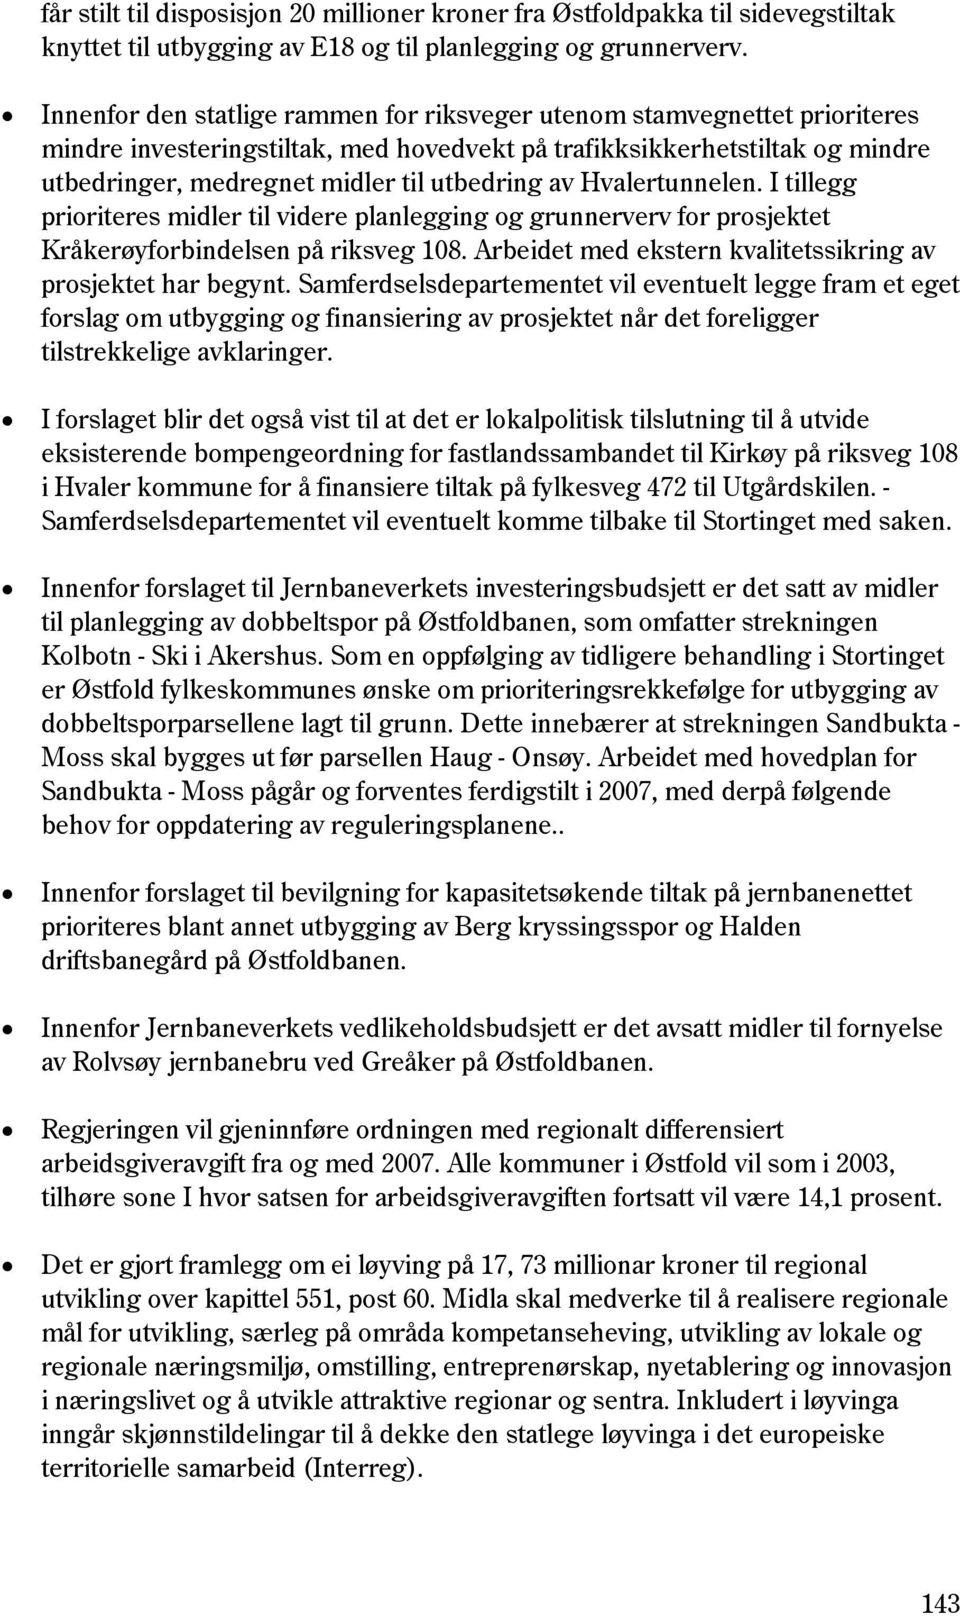 av Hvalertunnelen. I tillegg prioriteres midler til videre planlegging og grunnerverv for prosjektet Kråkerøyforbindelsen på riksveg 108.